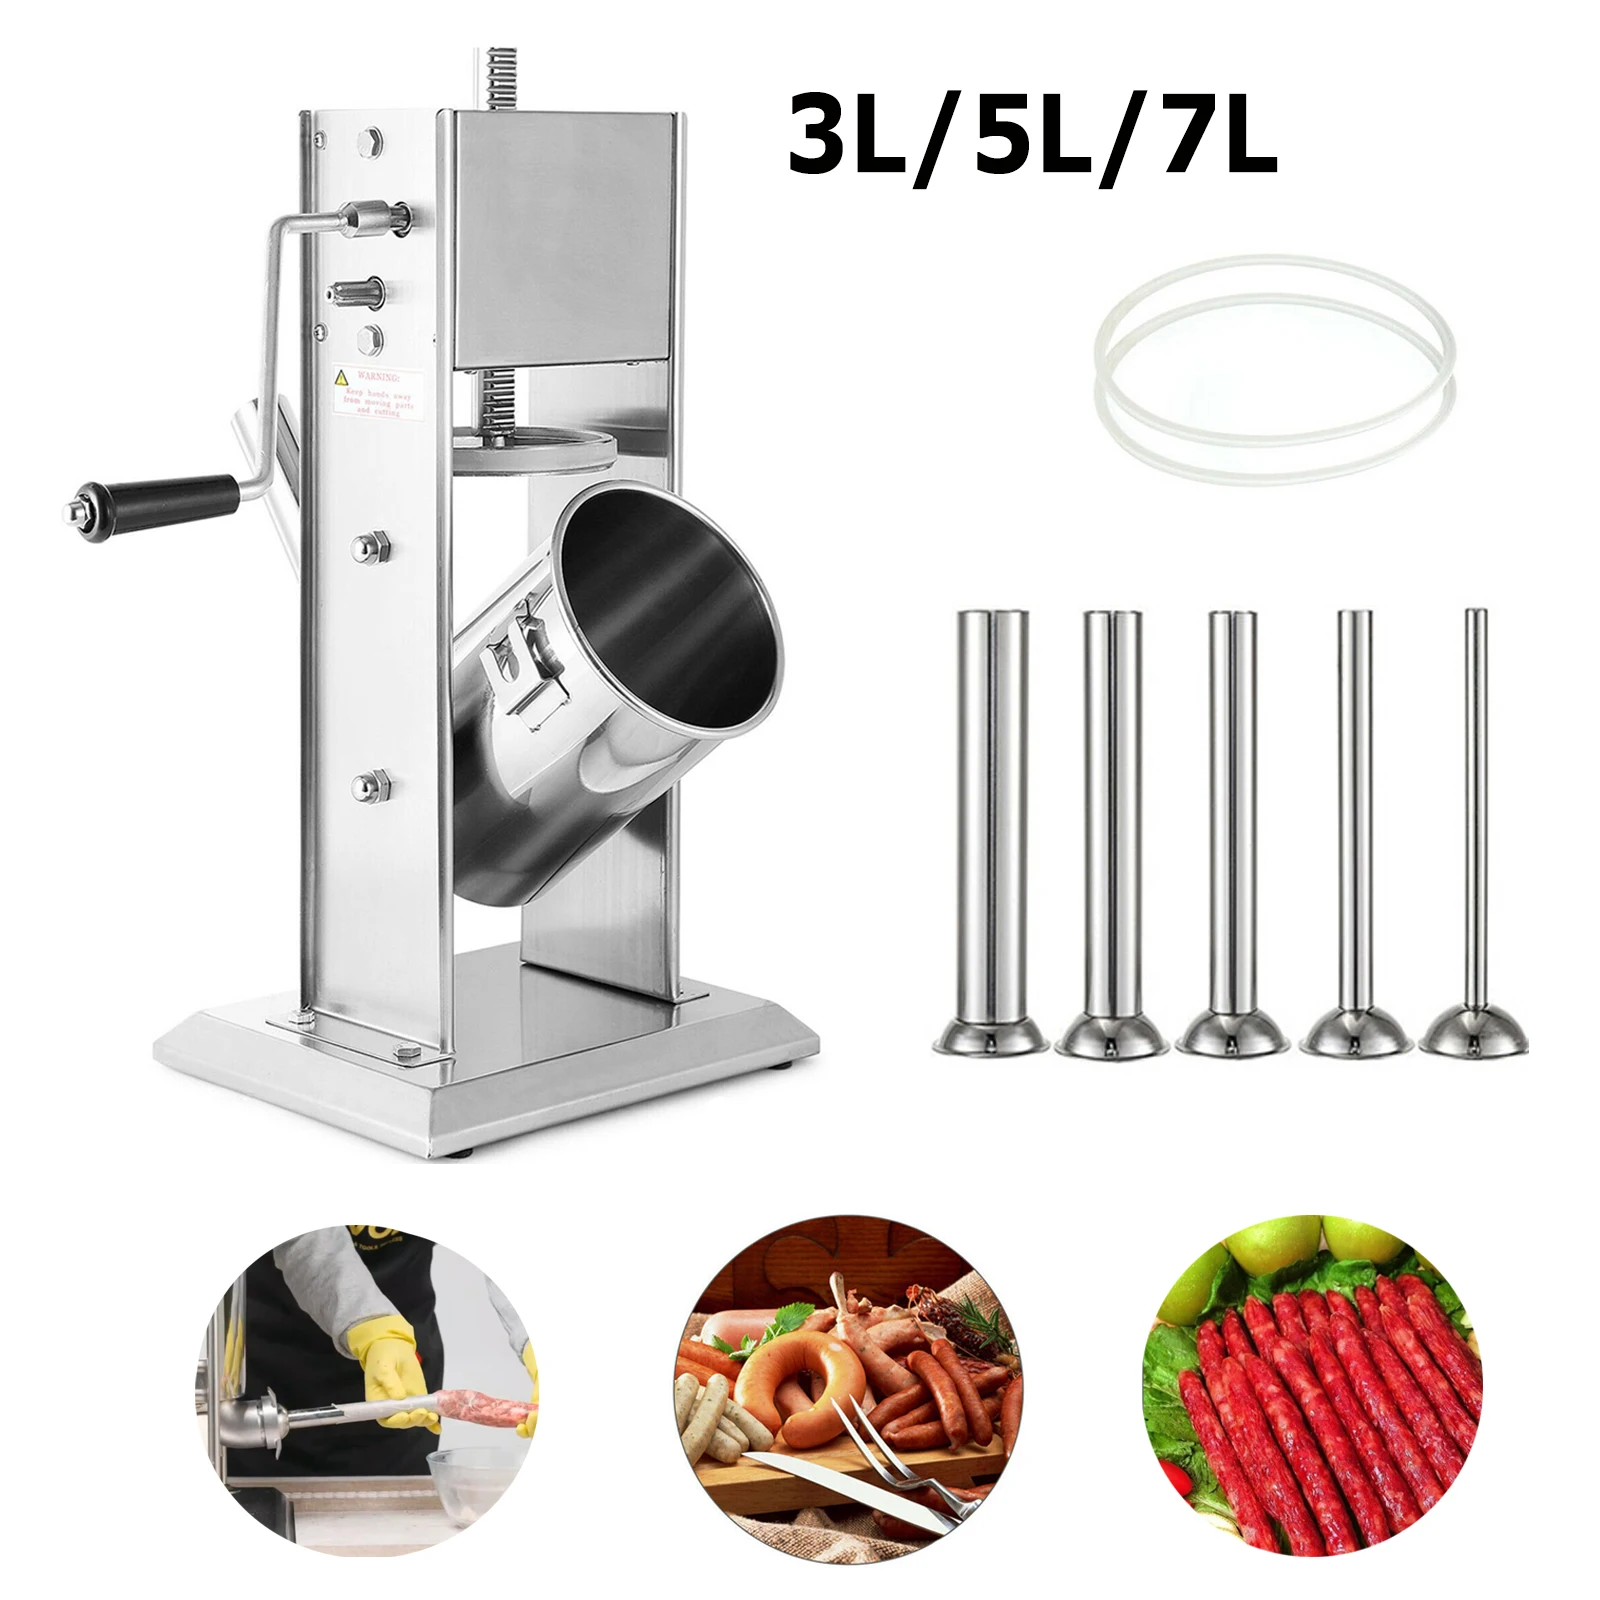 

Вертикальный колбасный шприц 3 л/5 л/7 л, устройство для наполнения мяса, медленная/быстрая ручная машина для колбасы с 5 стандартами